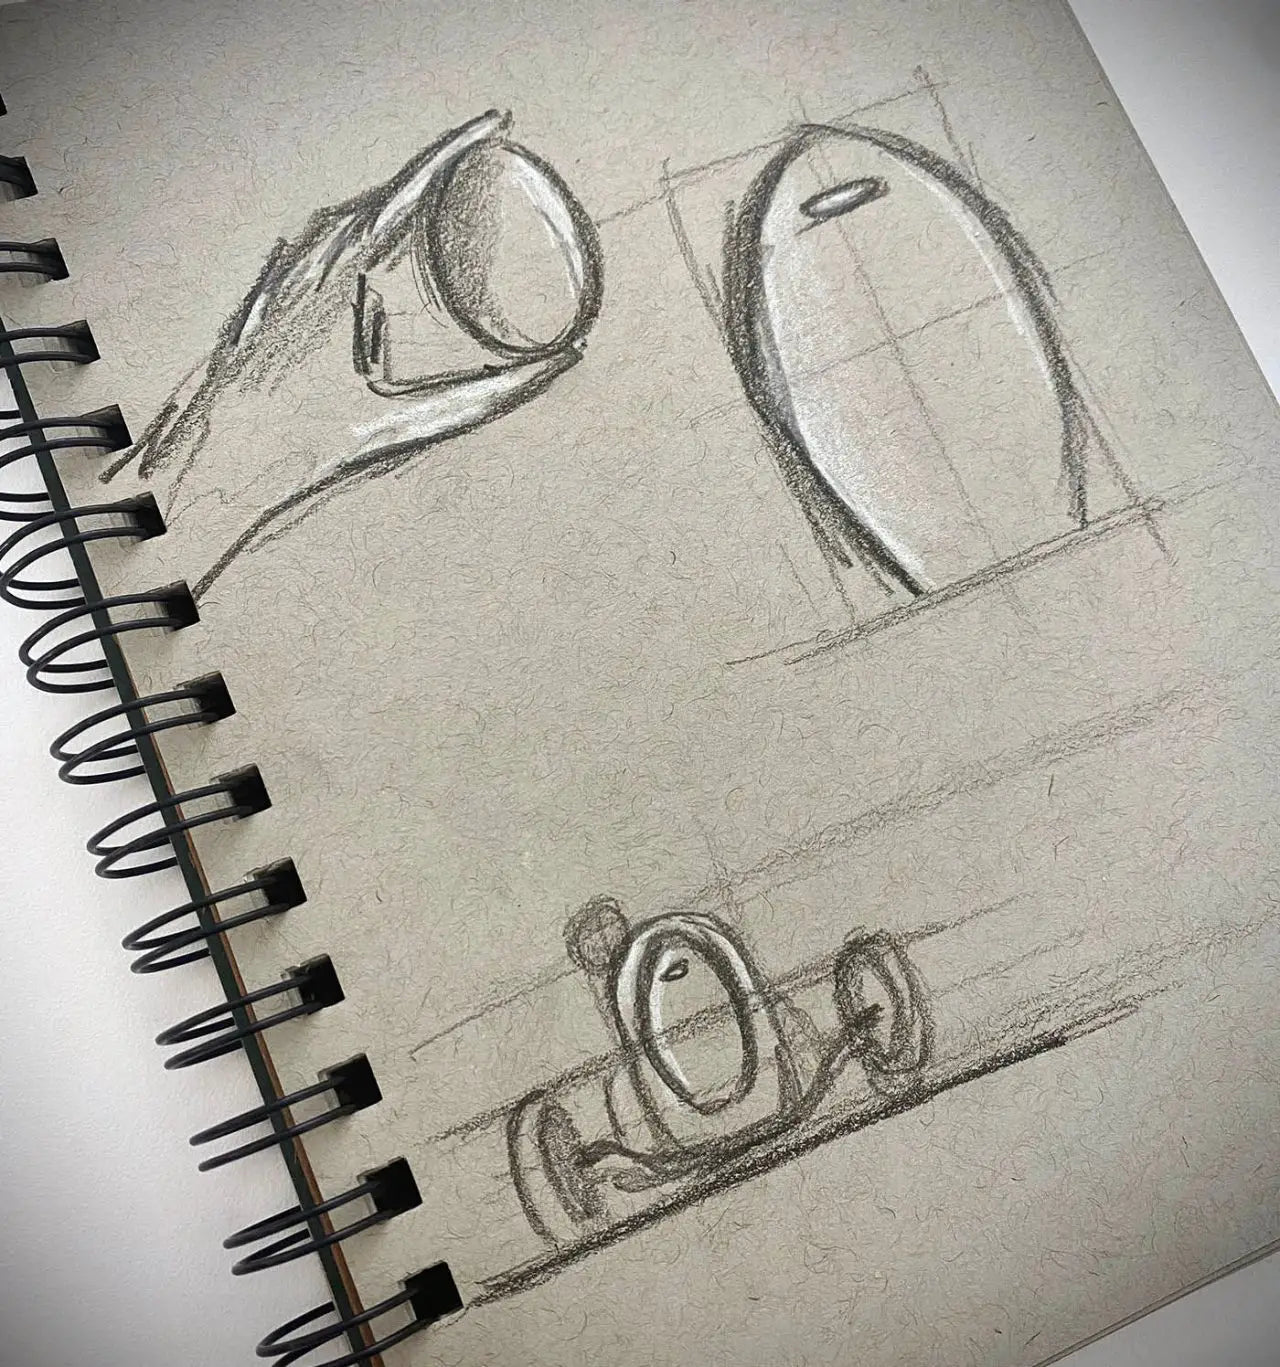 Asprey Bugatti egg sketch